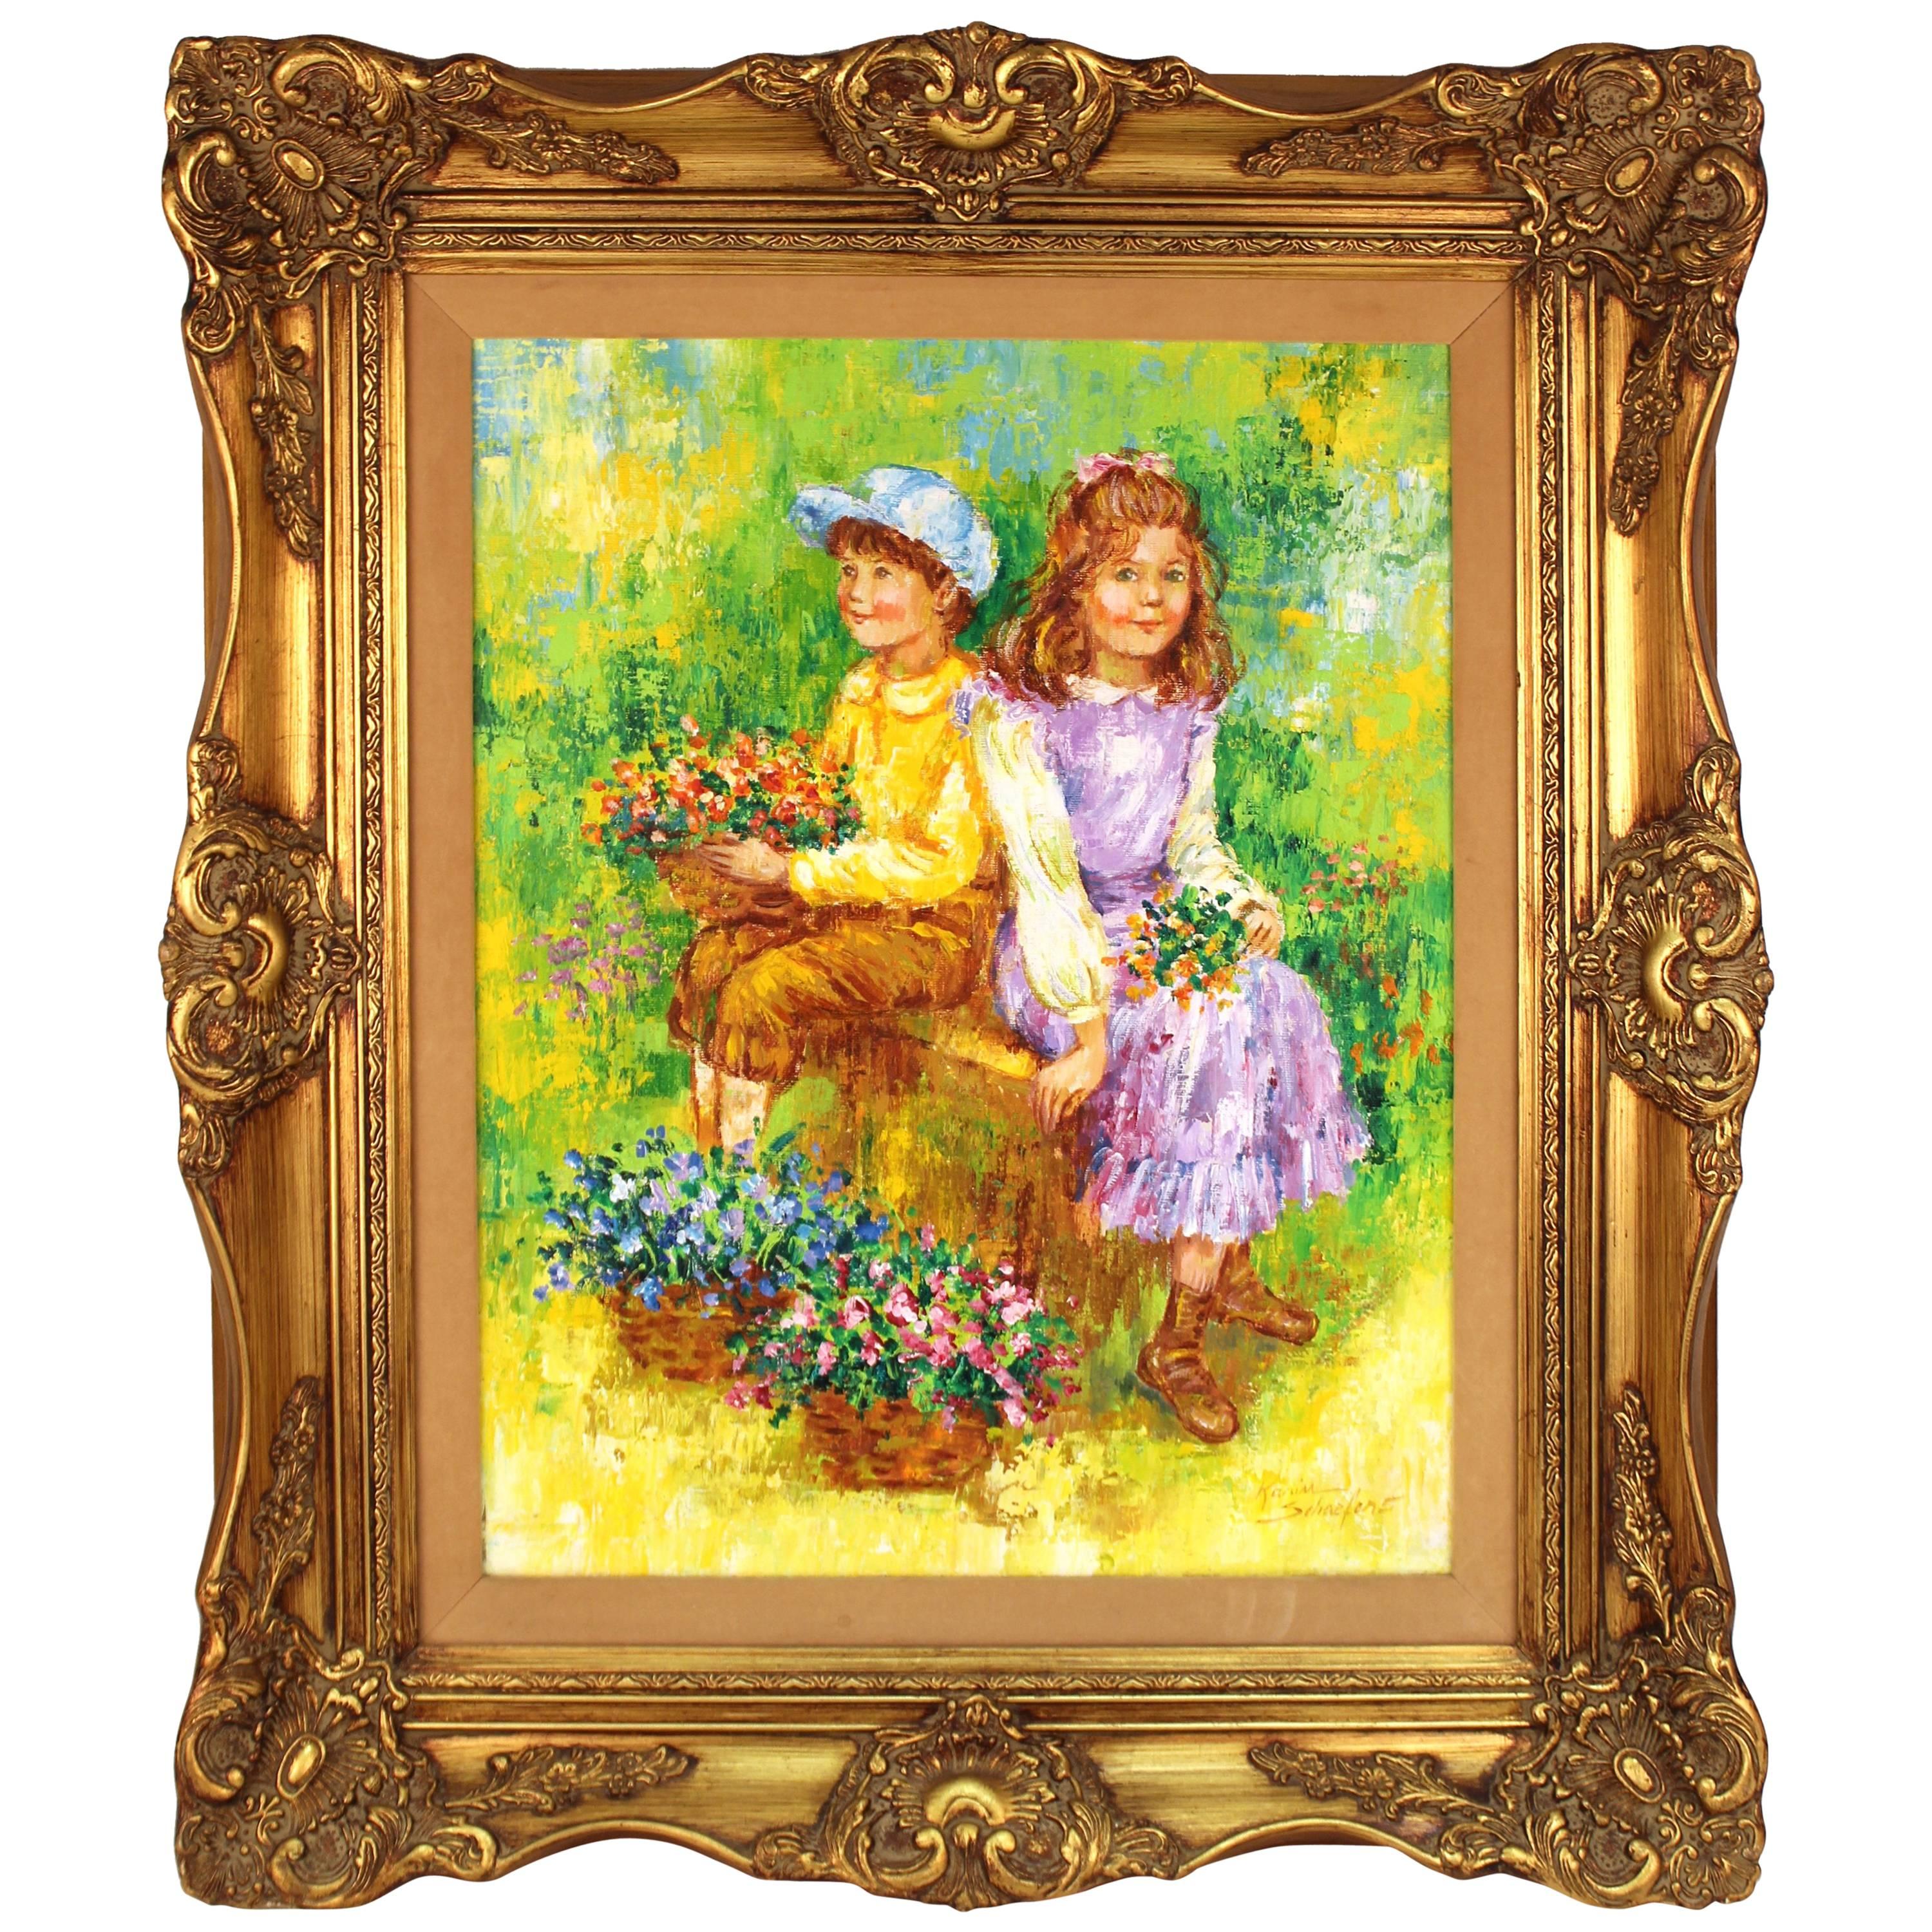  Peinture intitulée « Children Holding Flowers in a Field » (enfants tenant des fleurs dans un champ) de Karin Schaefers 